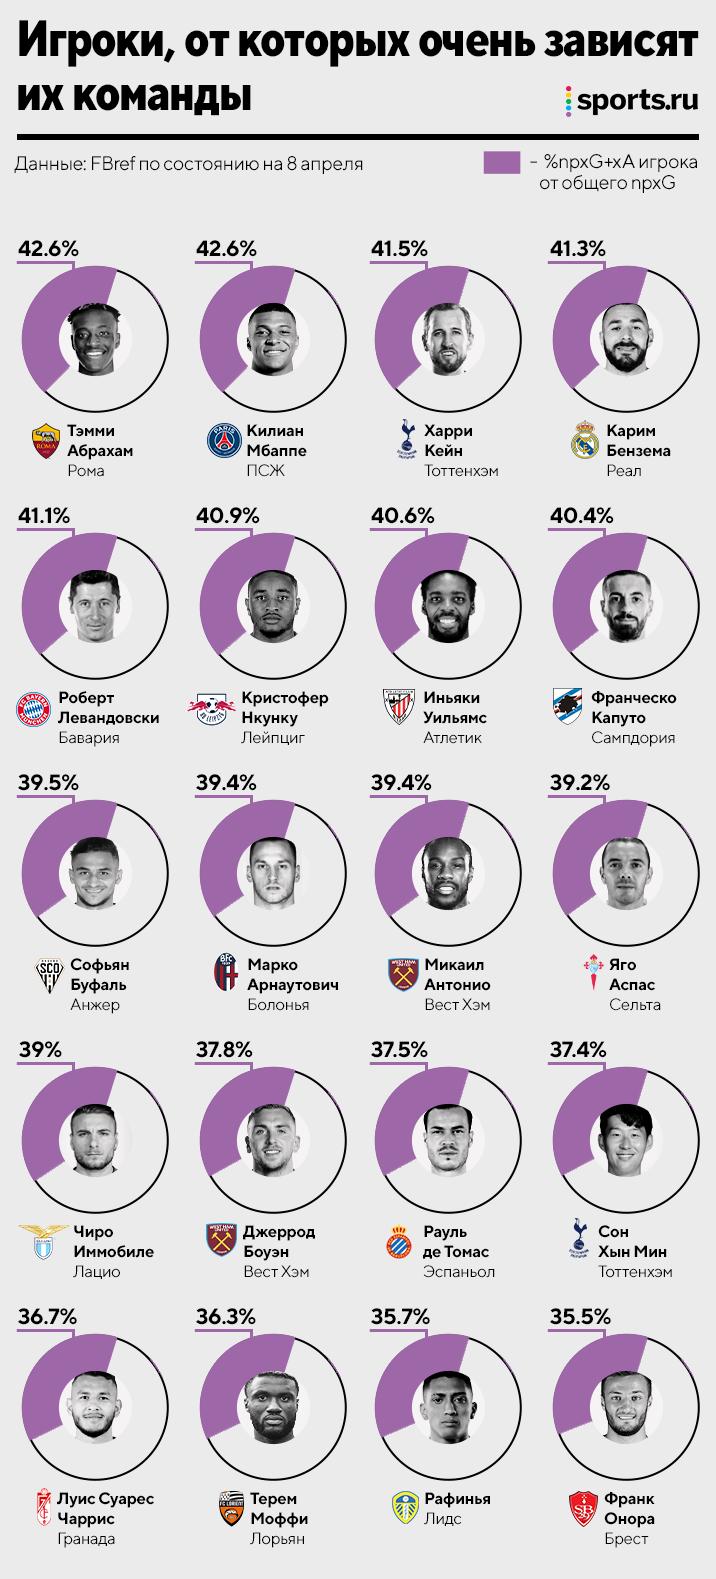 «Реал» очень зависит от Бензема – 41% атак с его прямым участием. Кто еще так влияет на свои команды? 